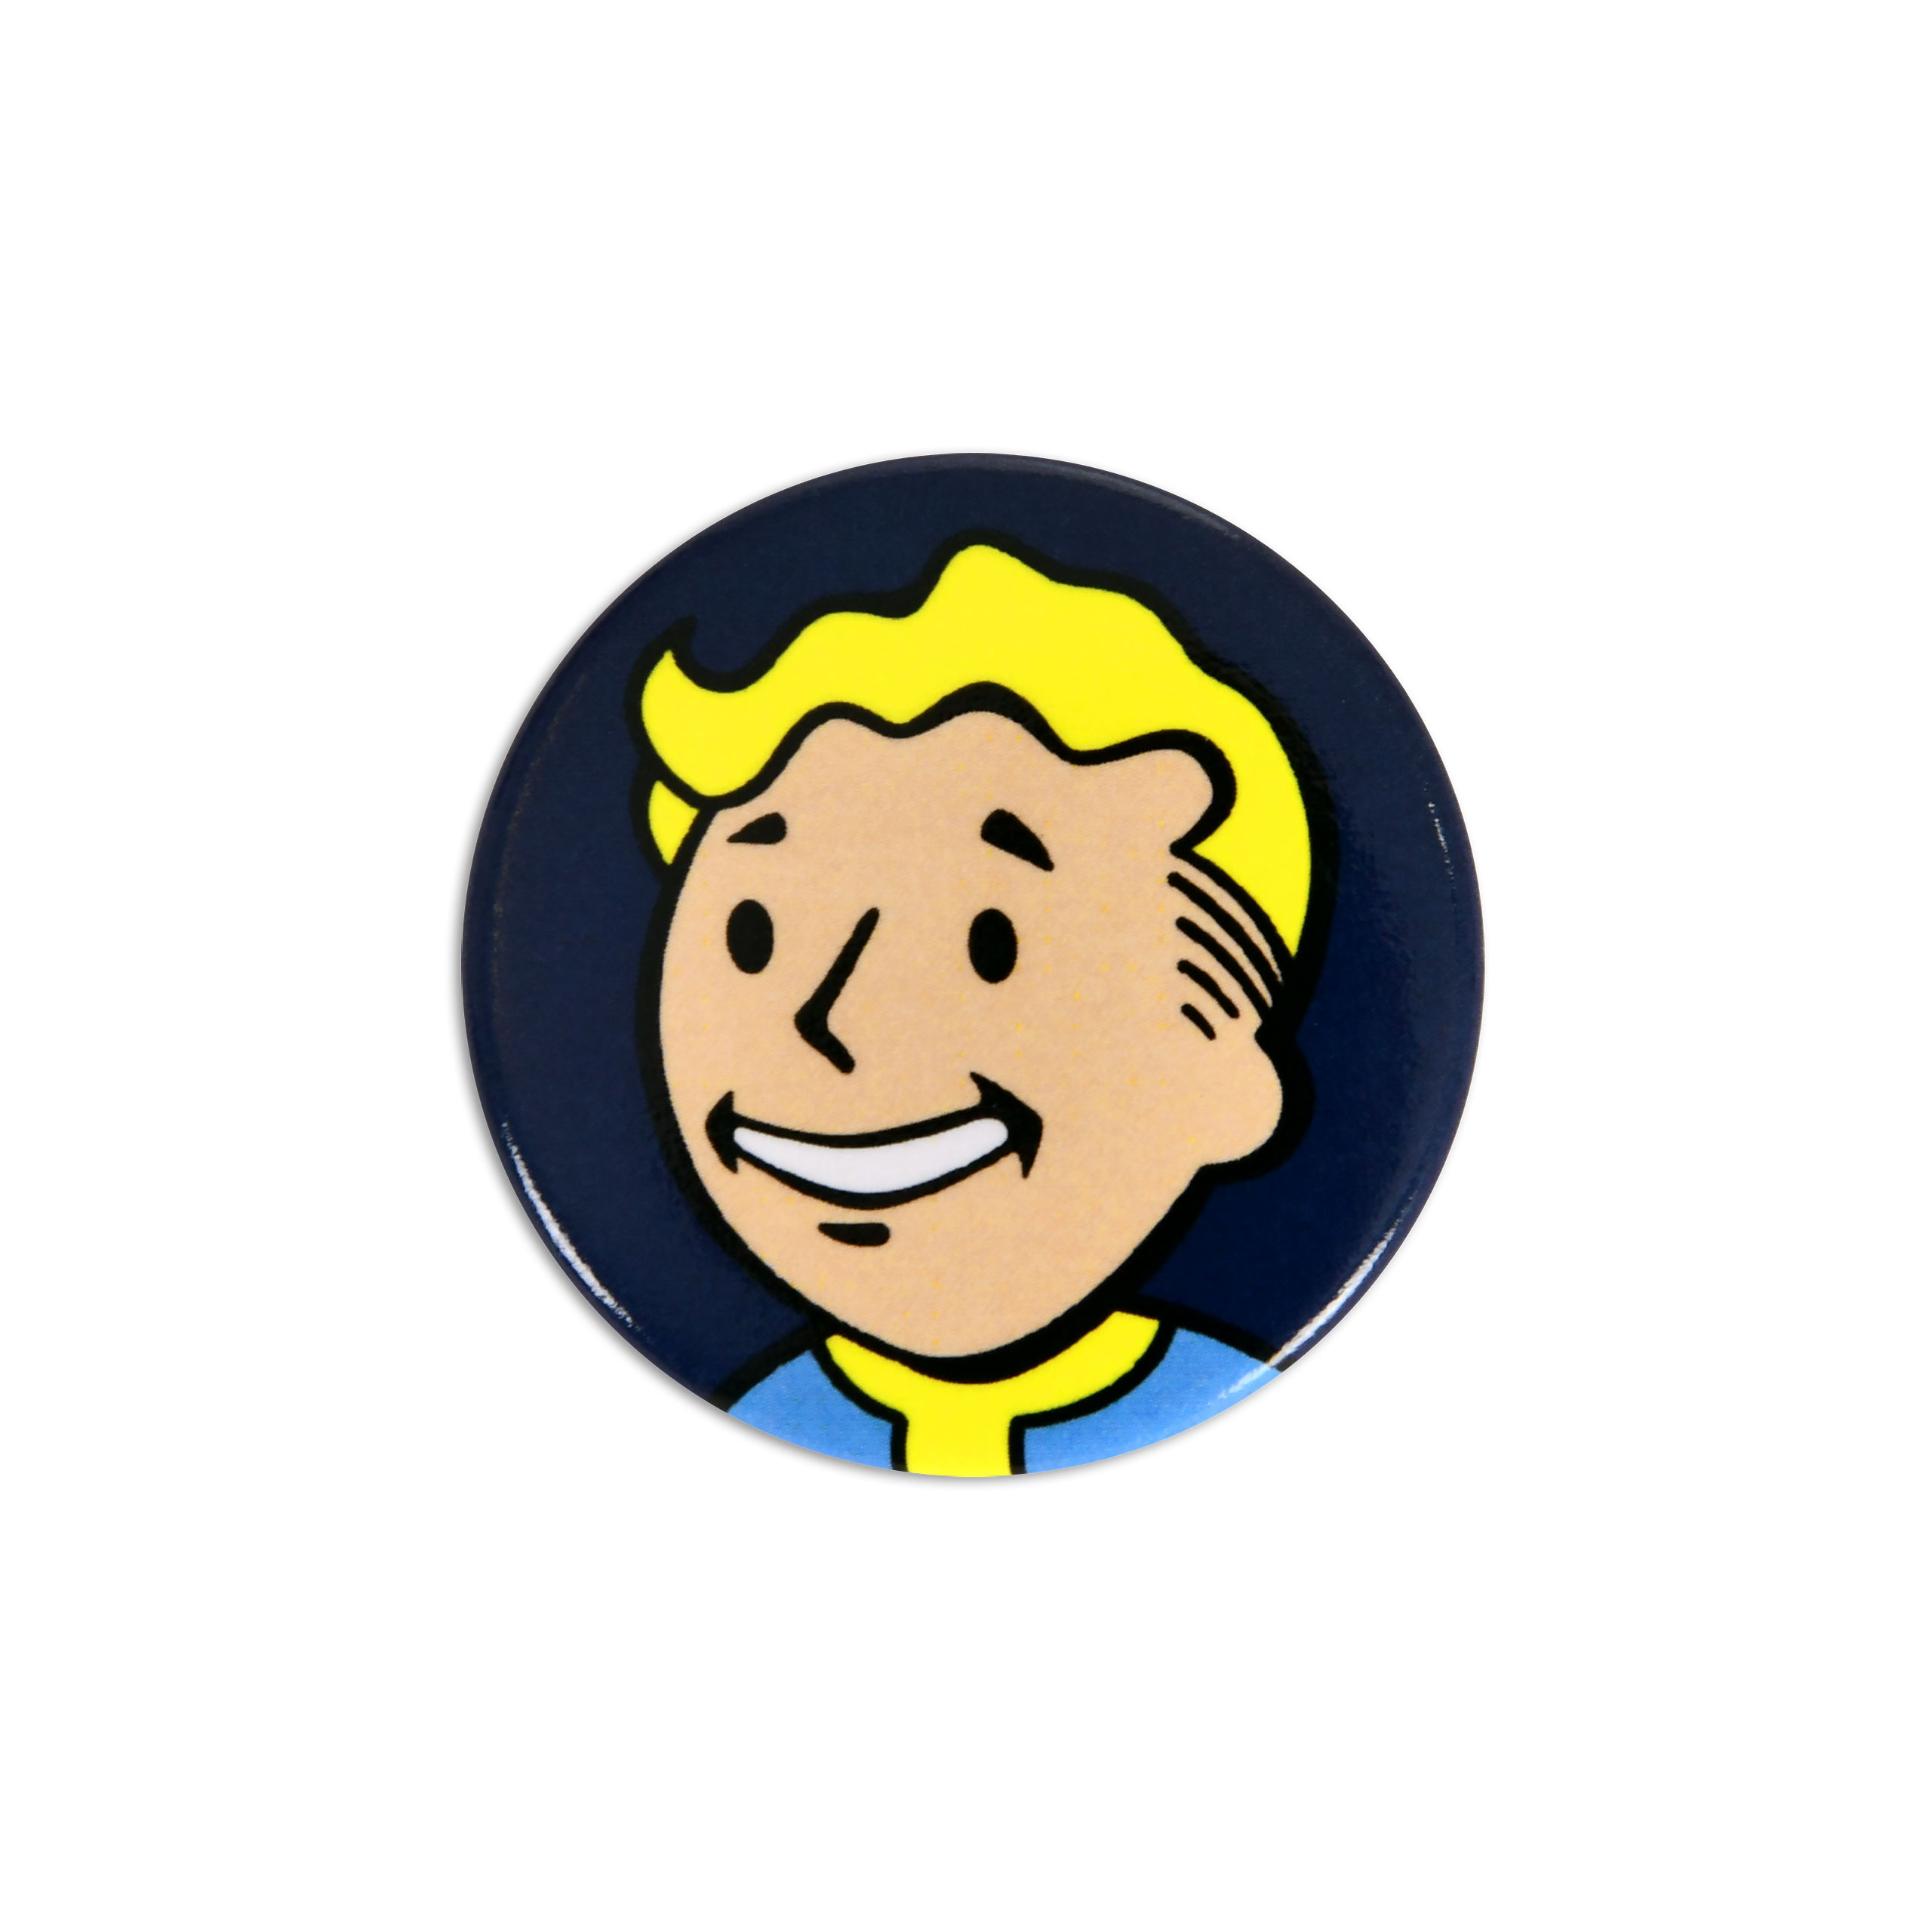 Vault Boy Button for Fallout Fans